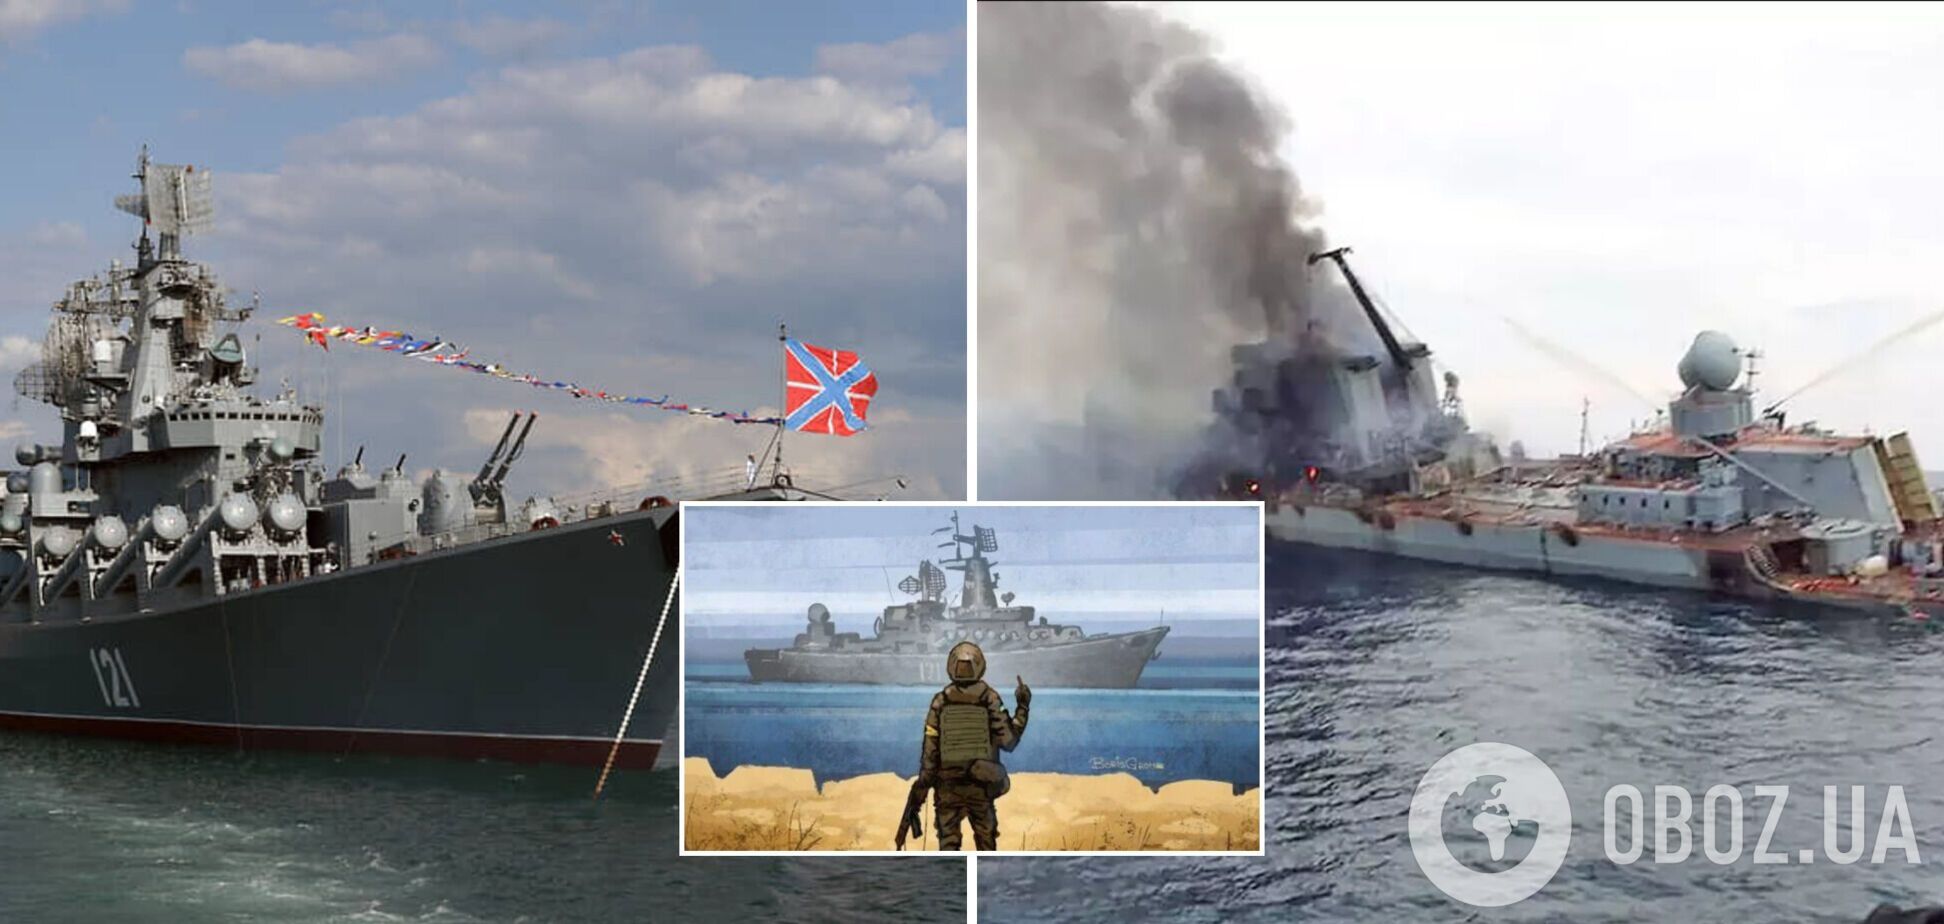 'Підтверджую влучання! Врятуйте екіпаж!' У мережі поширили запис 'останньої розмови' з крейсера 'Москва'